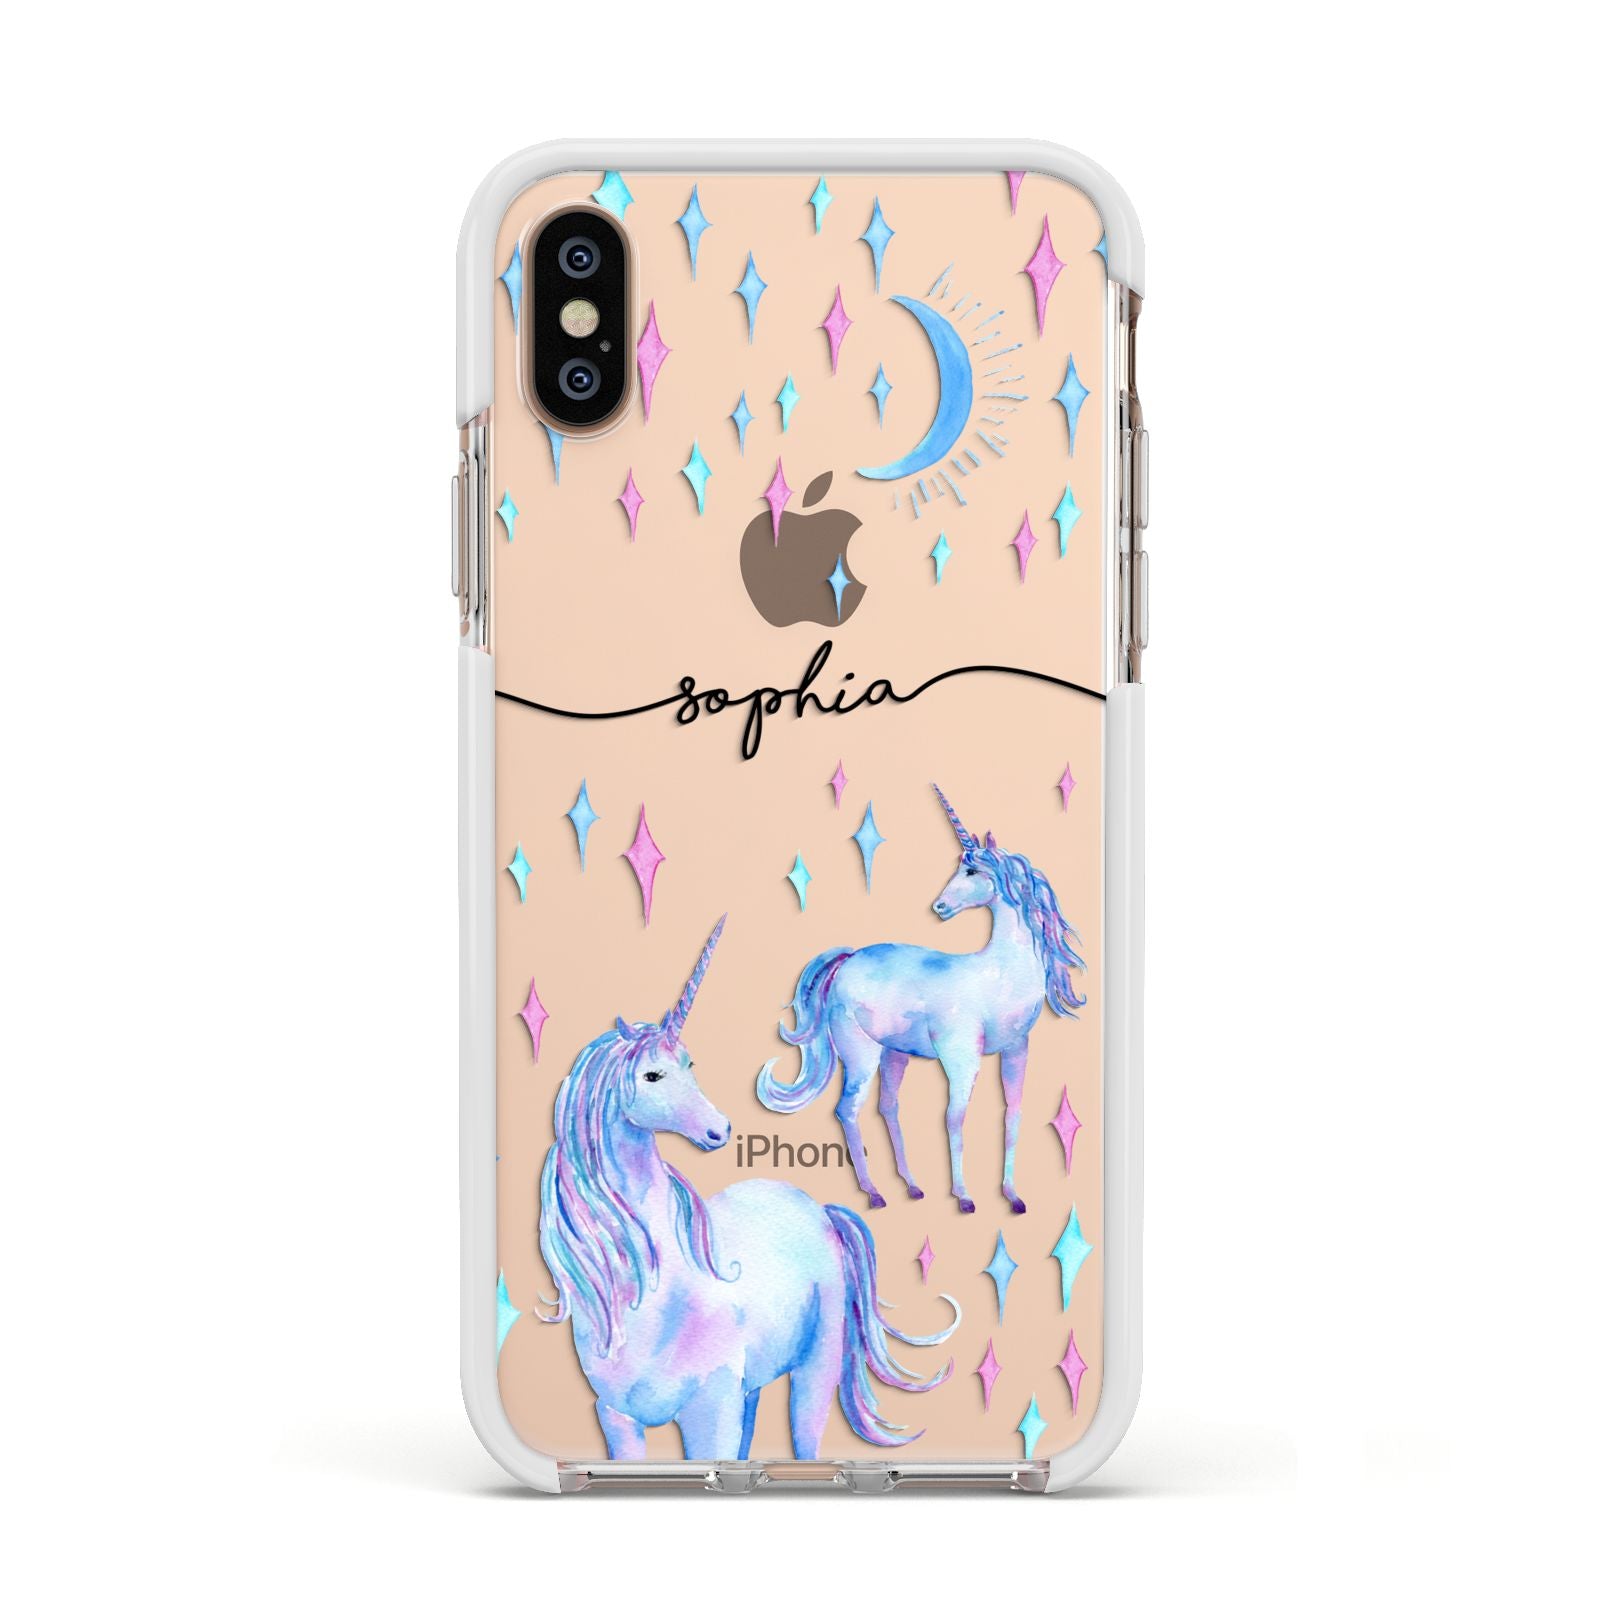 Personalised Unicorns Apple iPhone Xs Impact Case White Edge on Gold Phone